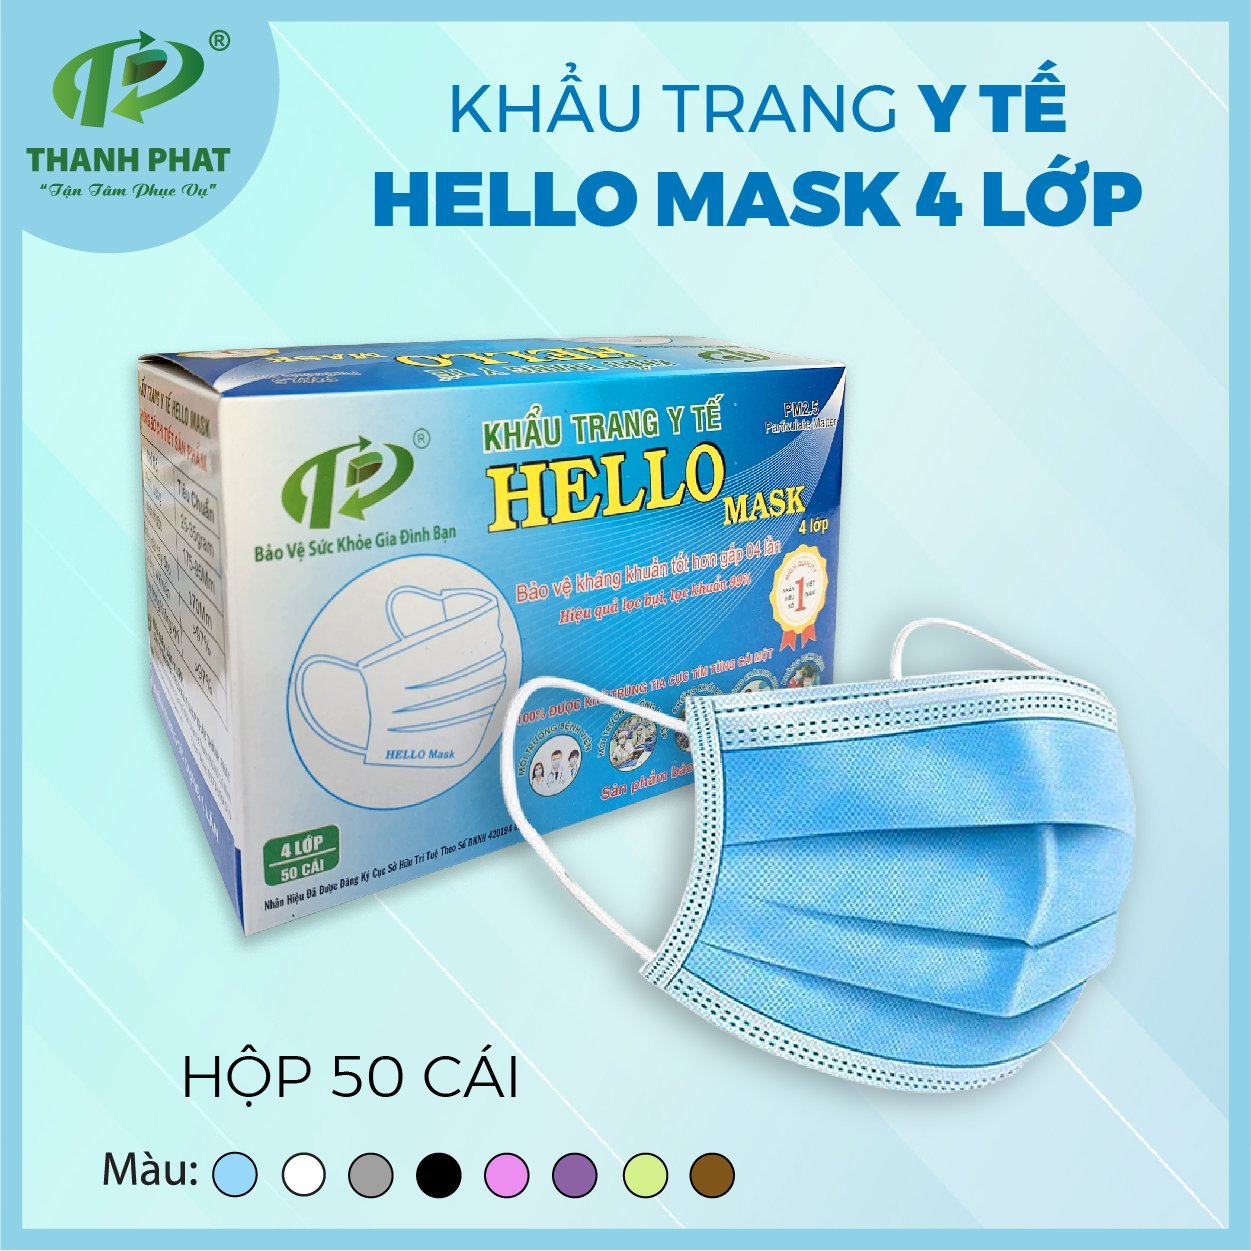 Khẩu trang y tế Hello Mask - Khẩu Trang Y Tế Hello Mask - Vật Tư Y Tế - Công Ty TNHH Phát Triển Xuất Nhập Khẩu Thành Phát